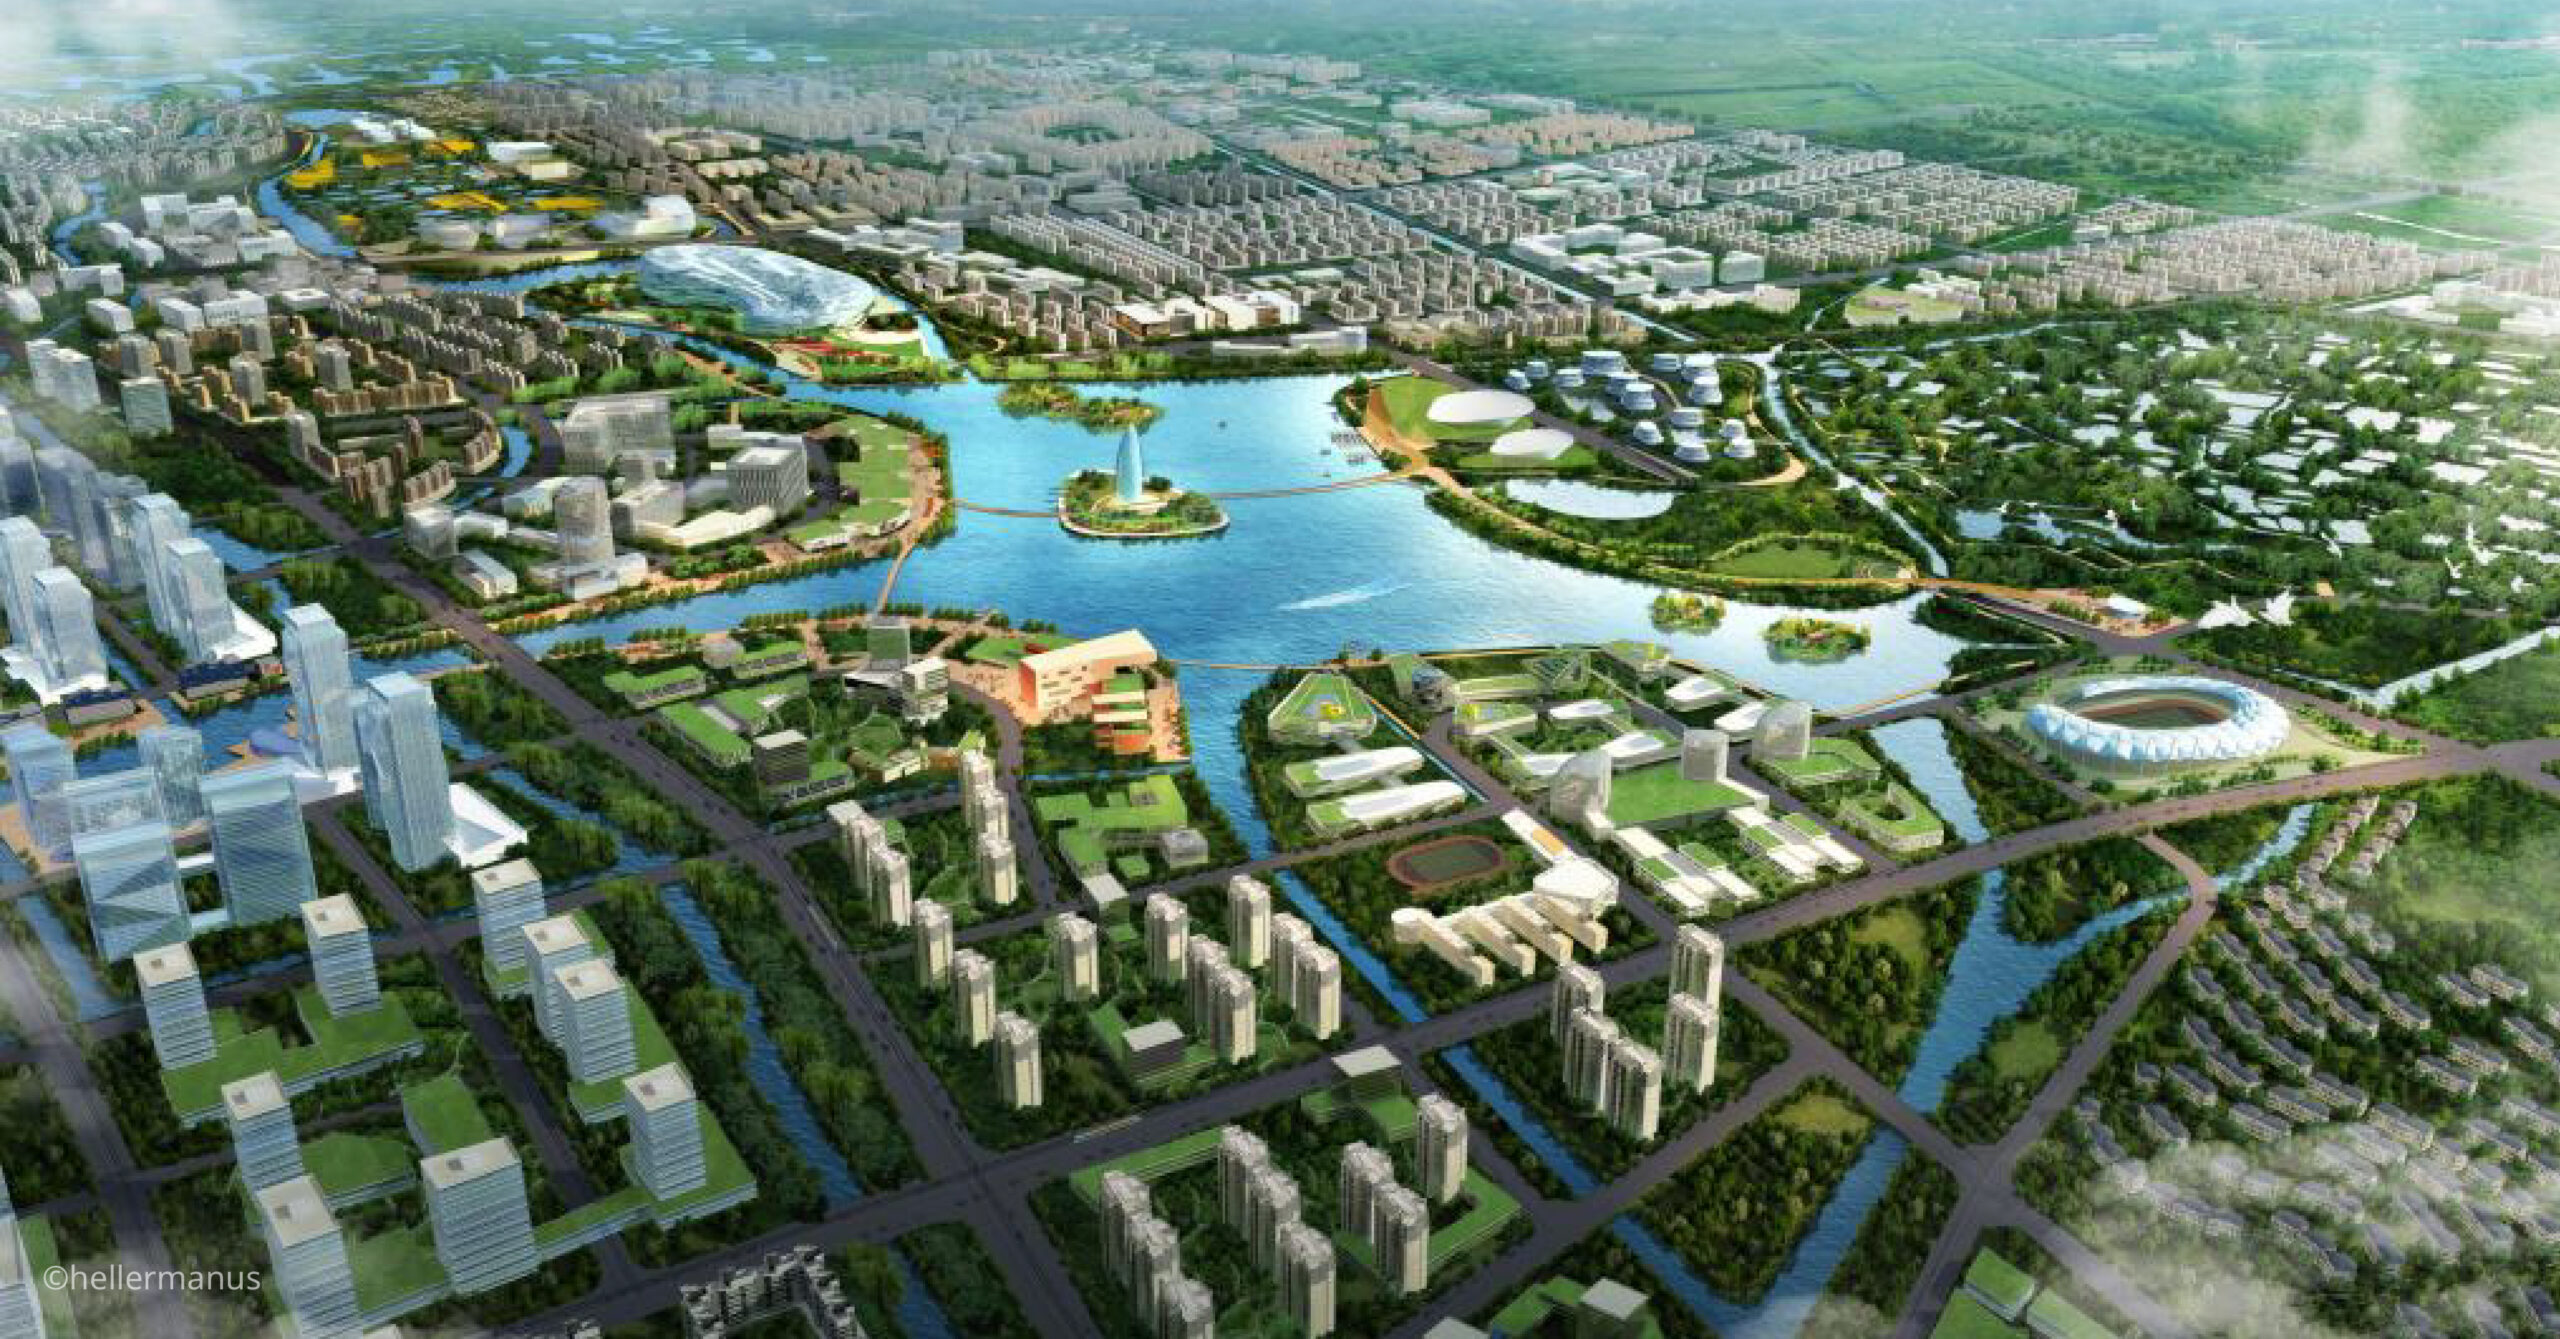 Hangzhou Future Sci-Tech City ย้อนดูผังเมืองหางโจว และกลยุทธ์การพัฒนาสู่การเป็นเมืองแห่งนวัตกรรมและเทคโนโลยี